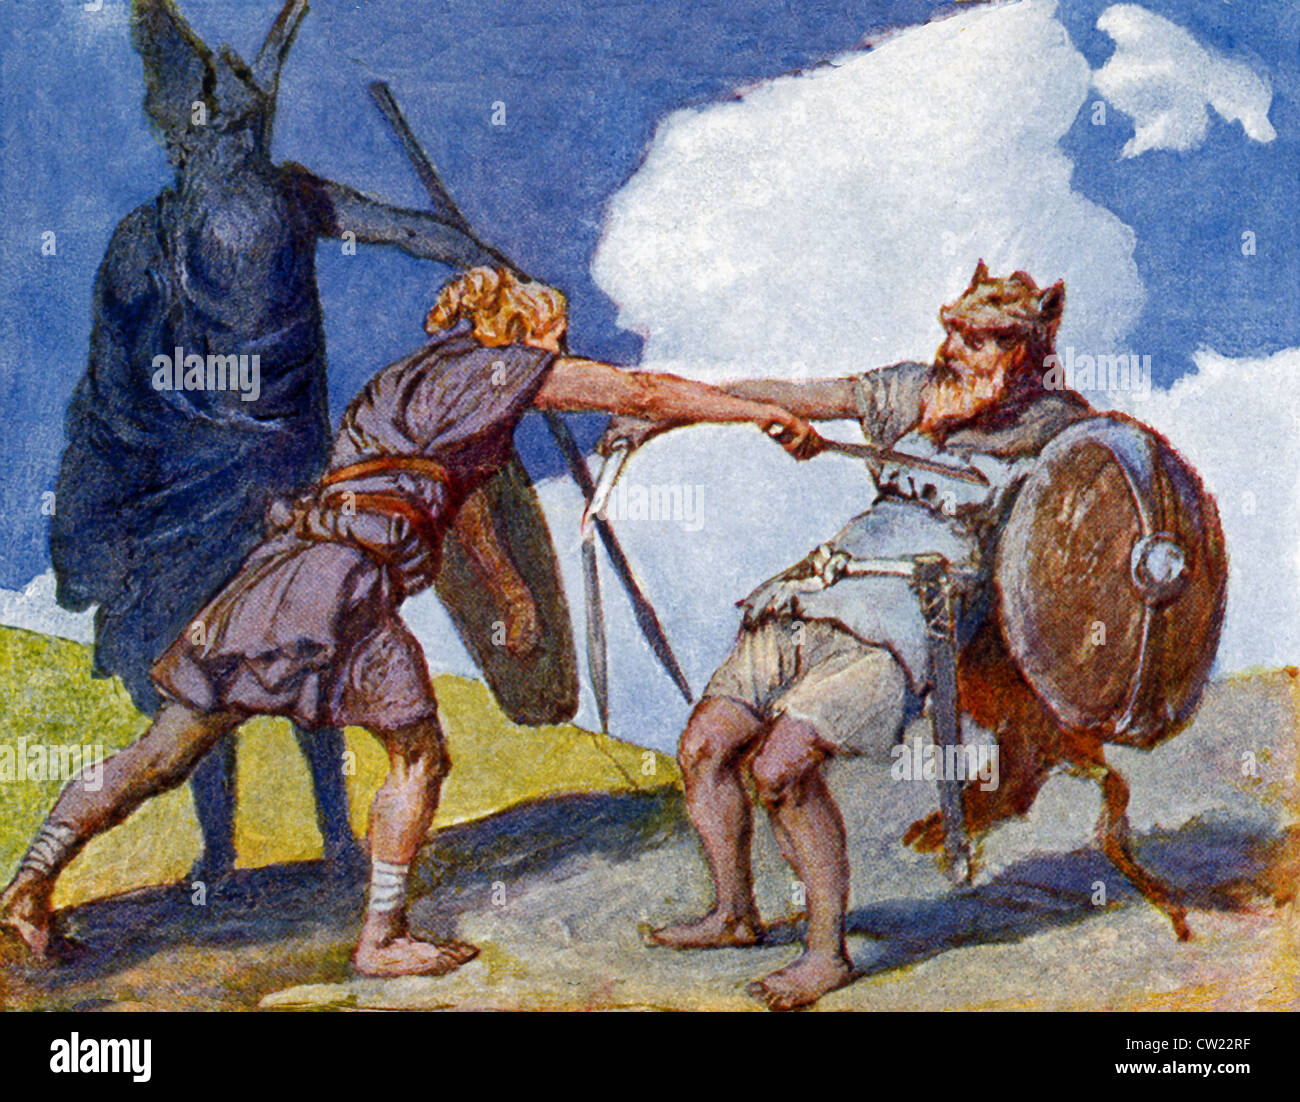 Quando Sigmund è diventata un righello, ci è una battaglia e Sigmund è abbinata a un uomo anziano che Odin sotto mentite spoglie. Foto Stock